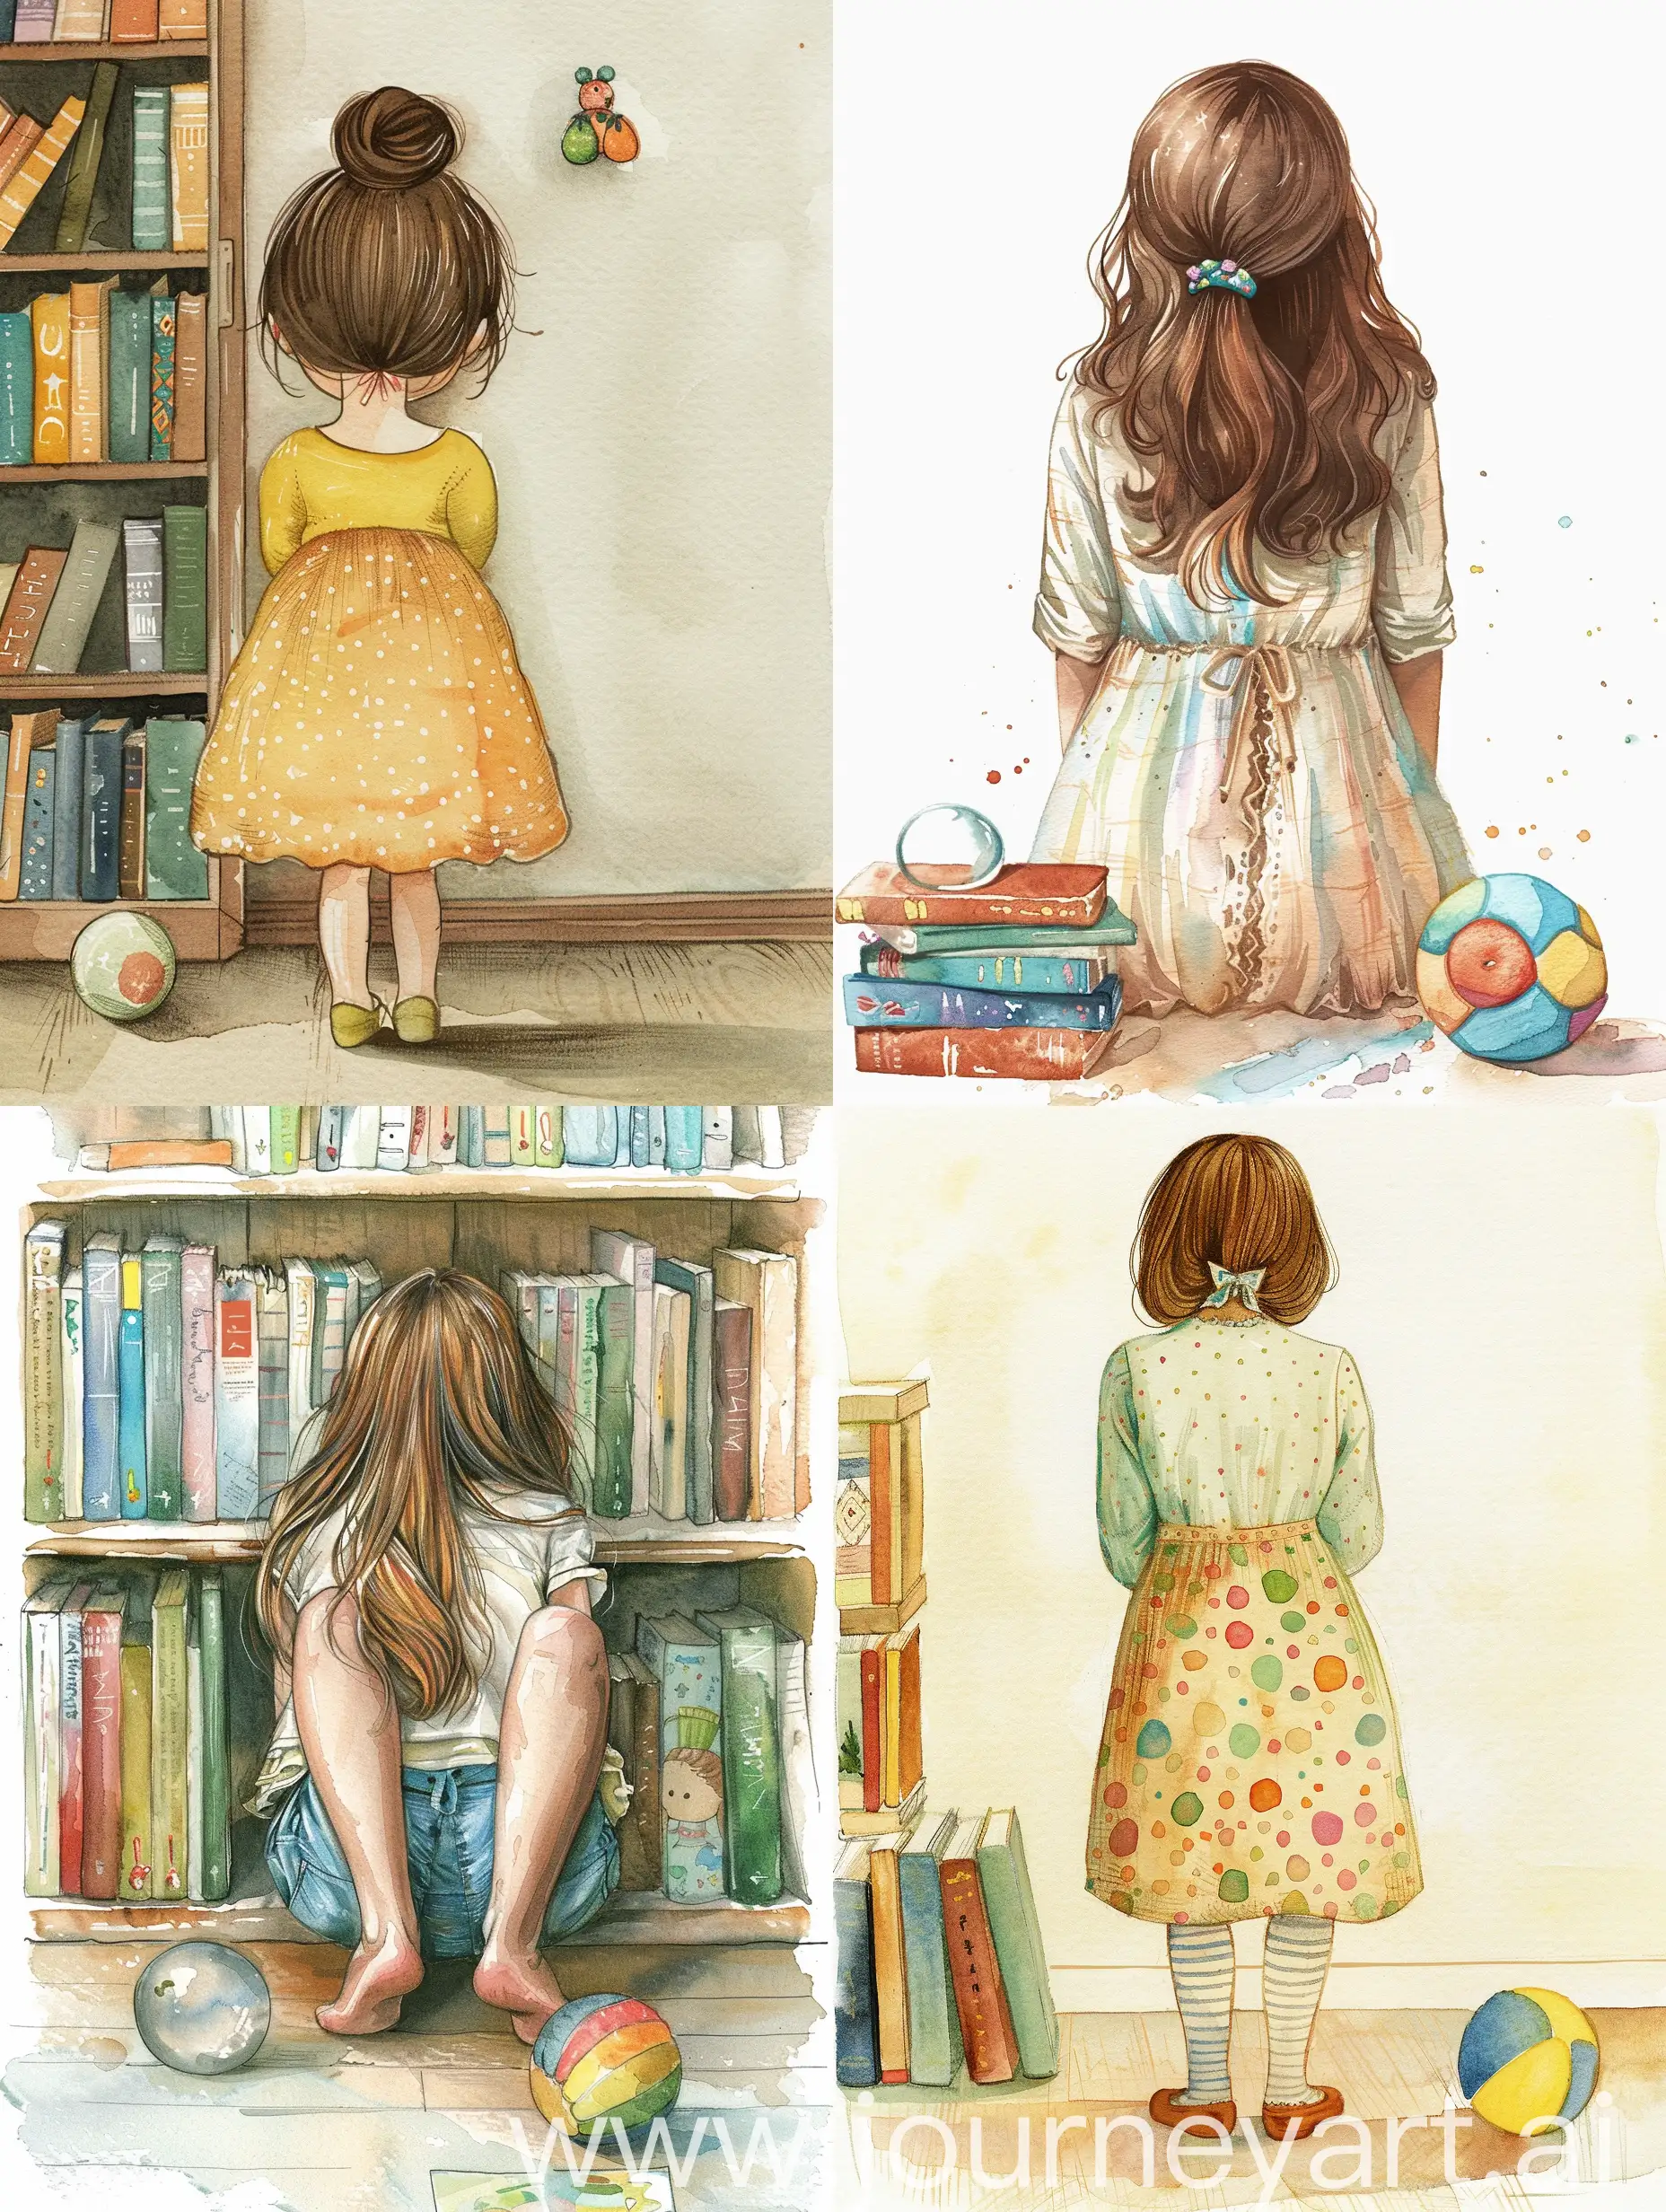 девочка прячет за спину красивую игрушку, полный рост, иллюстрация, акварель и векторная графика, книги, на полу мячик, красиво, арт